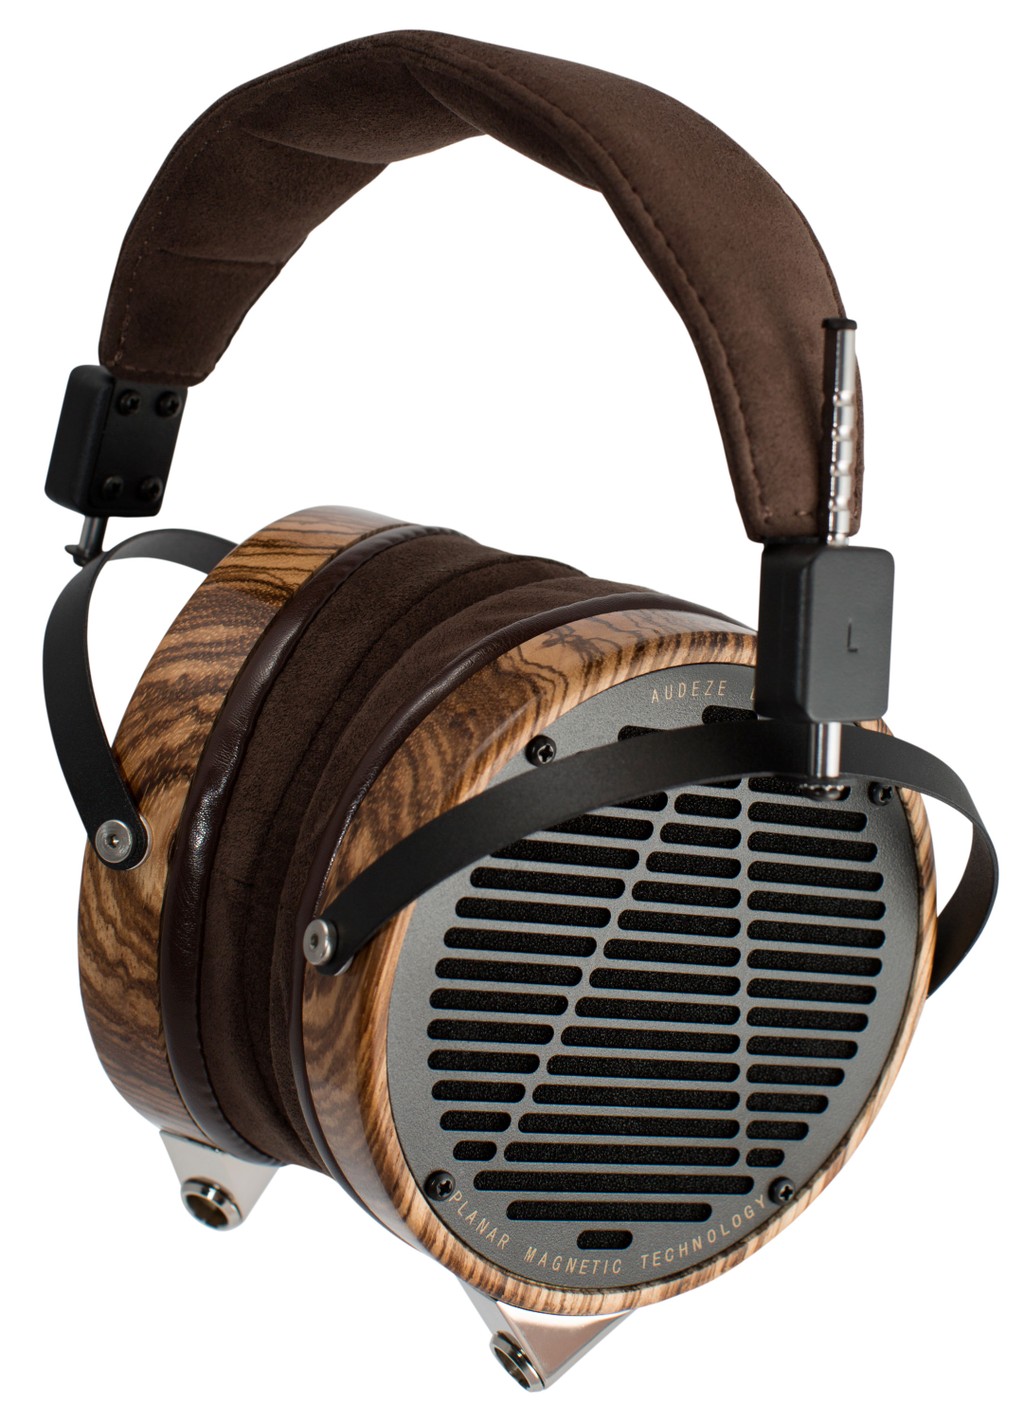 AKG K812 mẫu tai nghe over-ear đoạt giải Editor's Choice 2014 ảnh 4